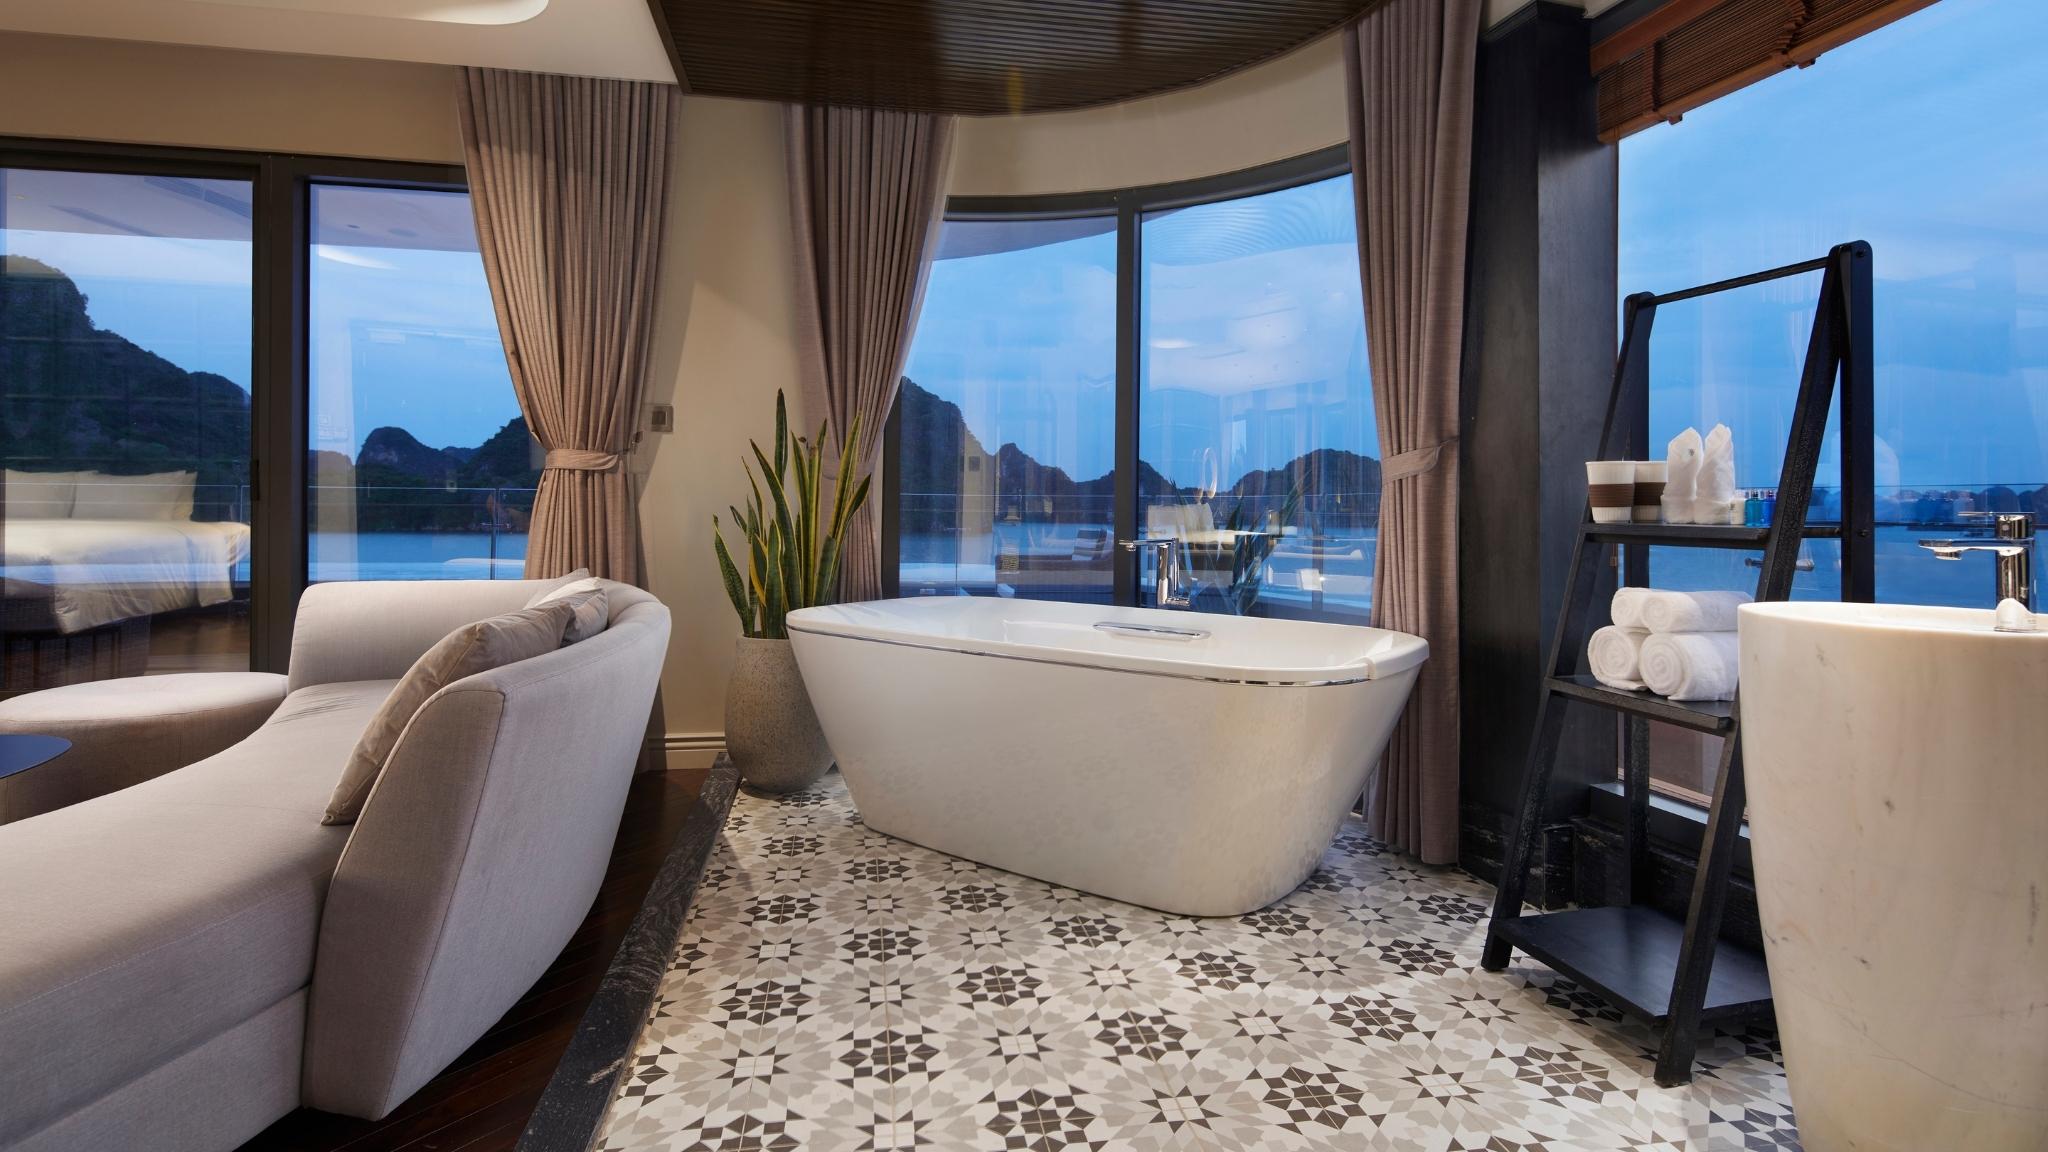 Bathtub with Huge Ocean-view Window